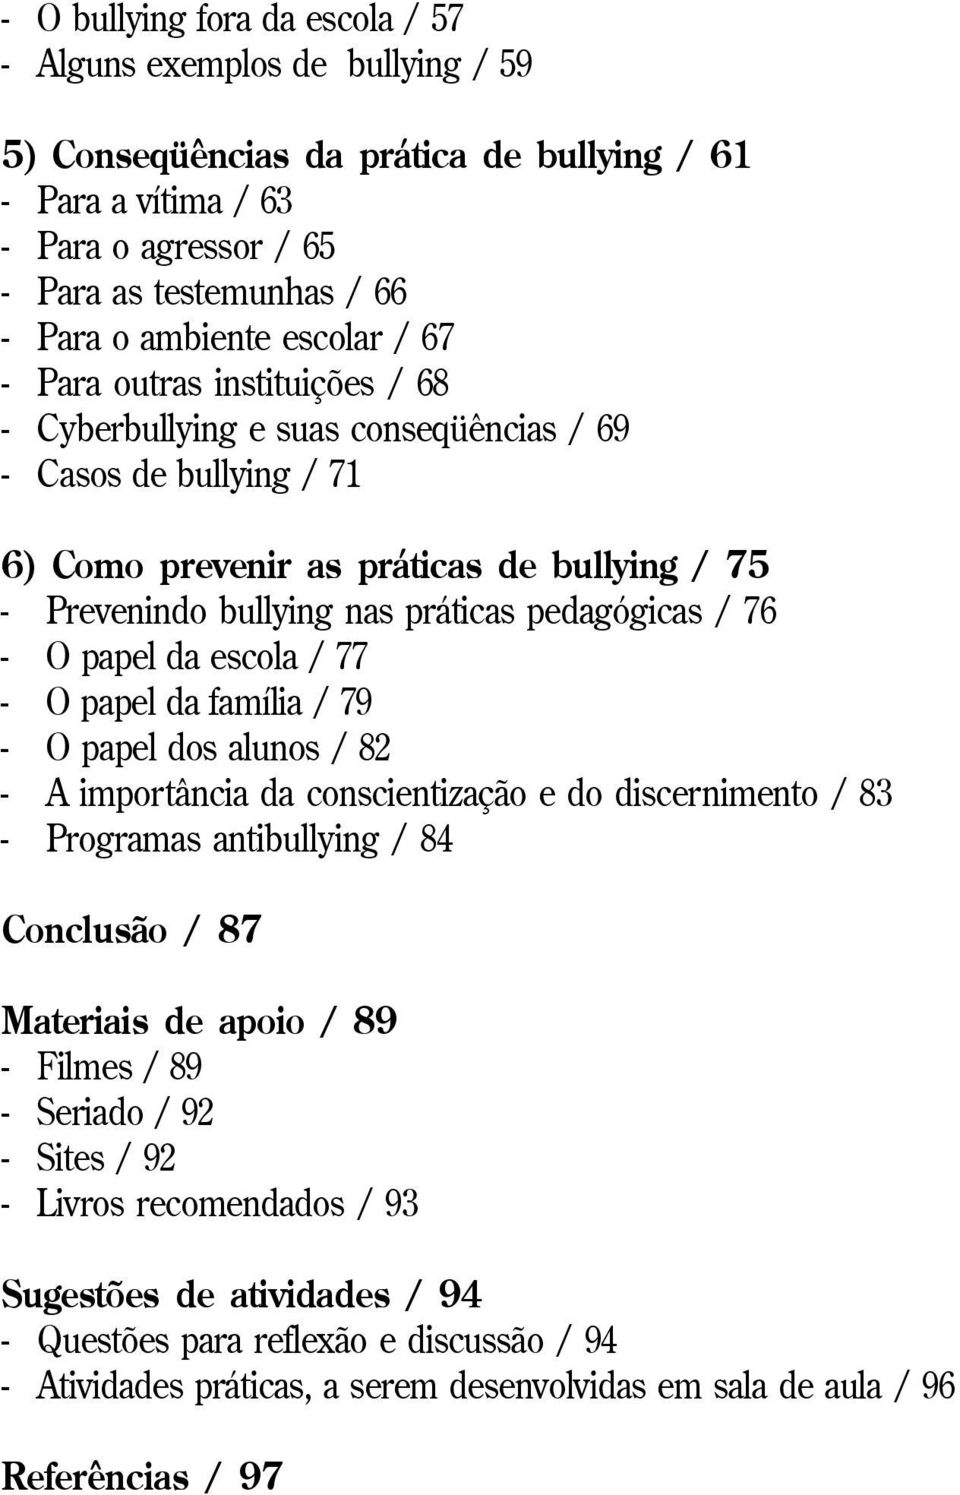 práticas pedagógicas / 76 - O papel da escola / 77 - O papel da família / 79 - O papel dos alunos / 82 - A importância da conscientização e do discernimento / 83 - Programas antibullying / 84